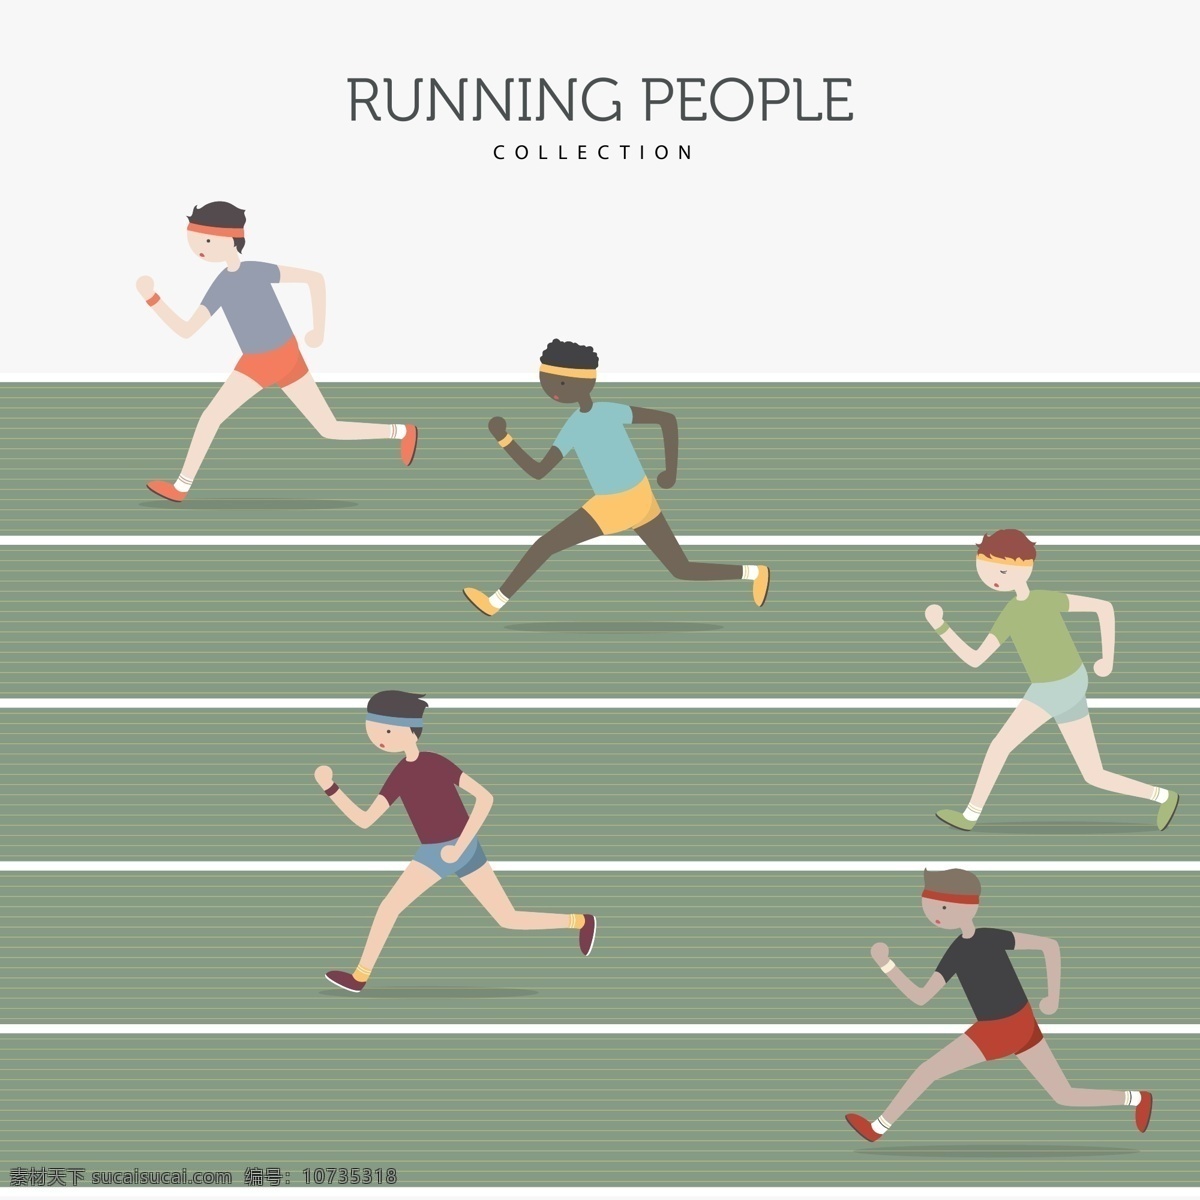 跑步 运动 体育运动 奥运会 比赛 运动海报 运动比赛海报 运动员 户外运动 室内运动 运动俱乐部 体育馆海报 卡通设计